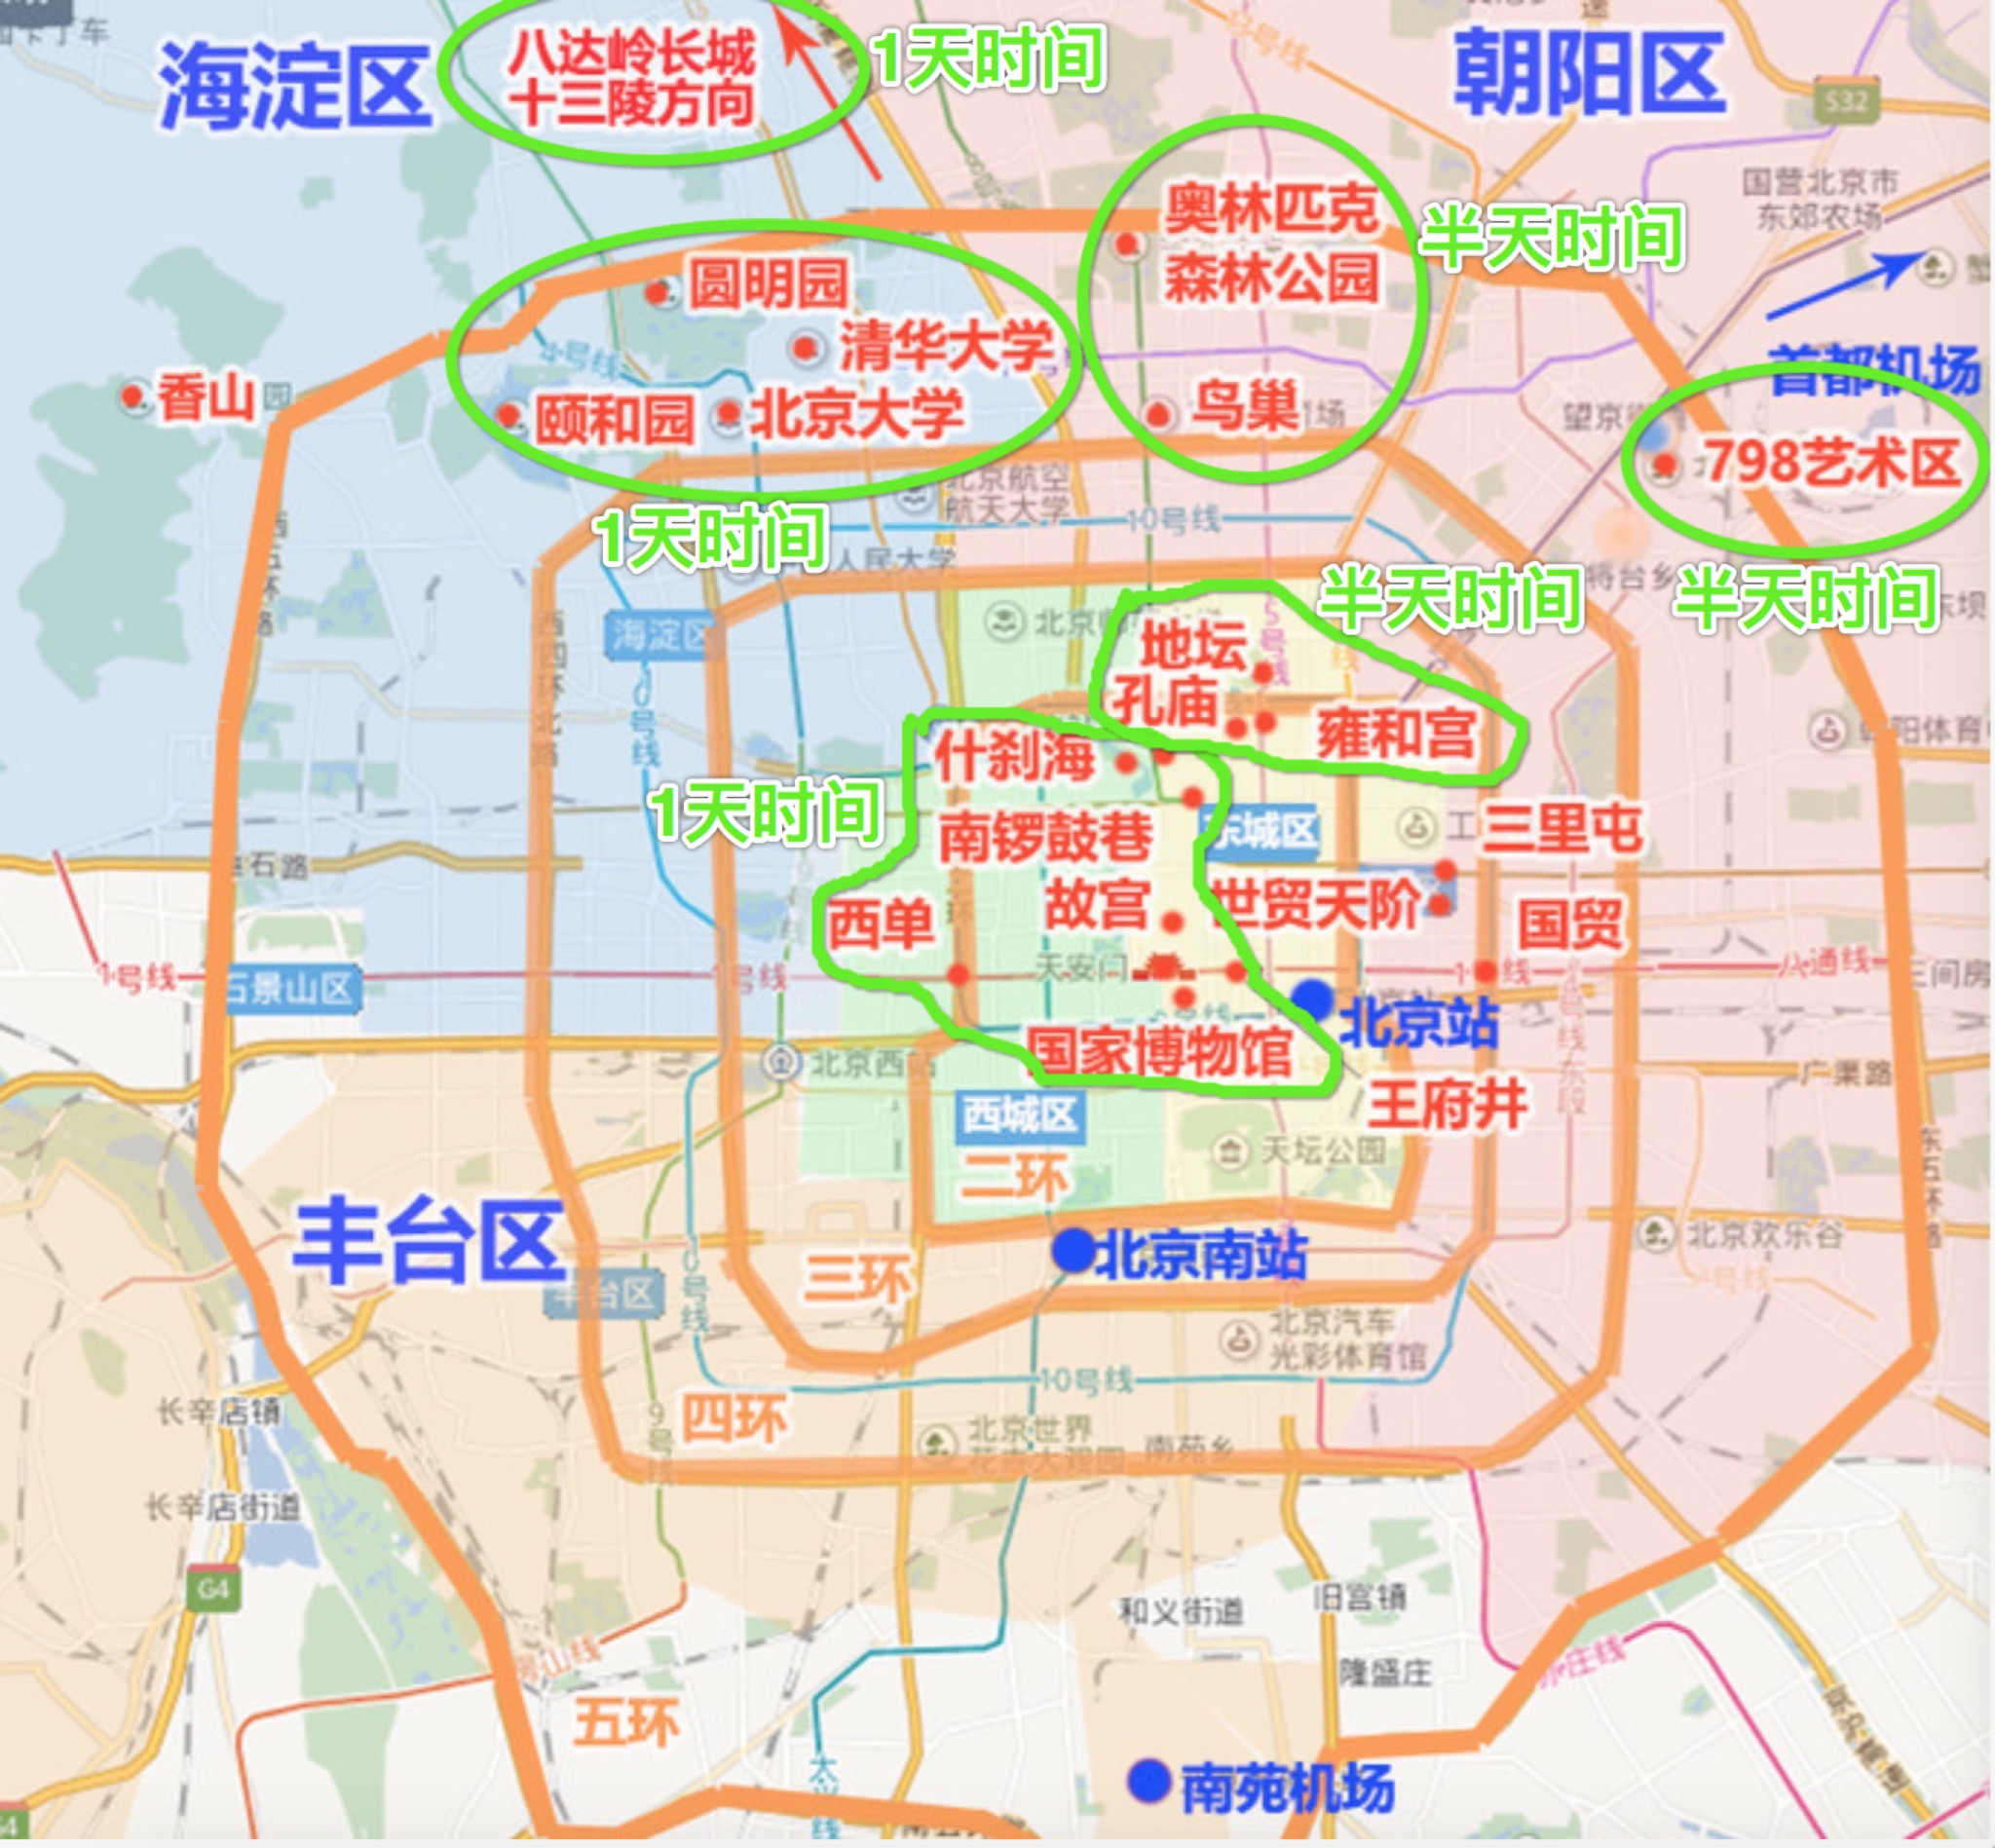 北京著名景点都分布在哪里?求一张最全景点地图!